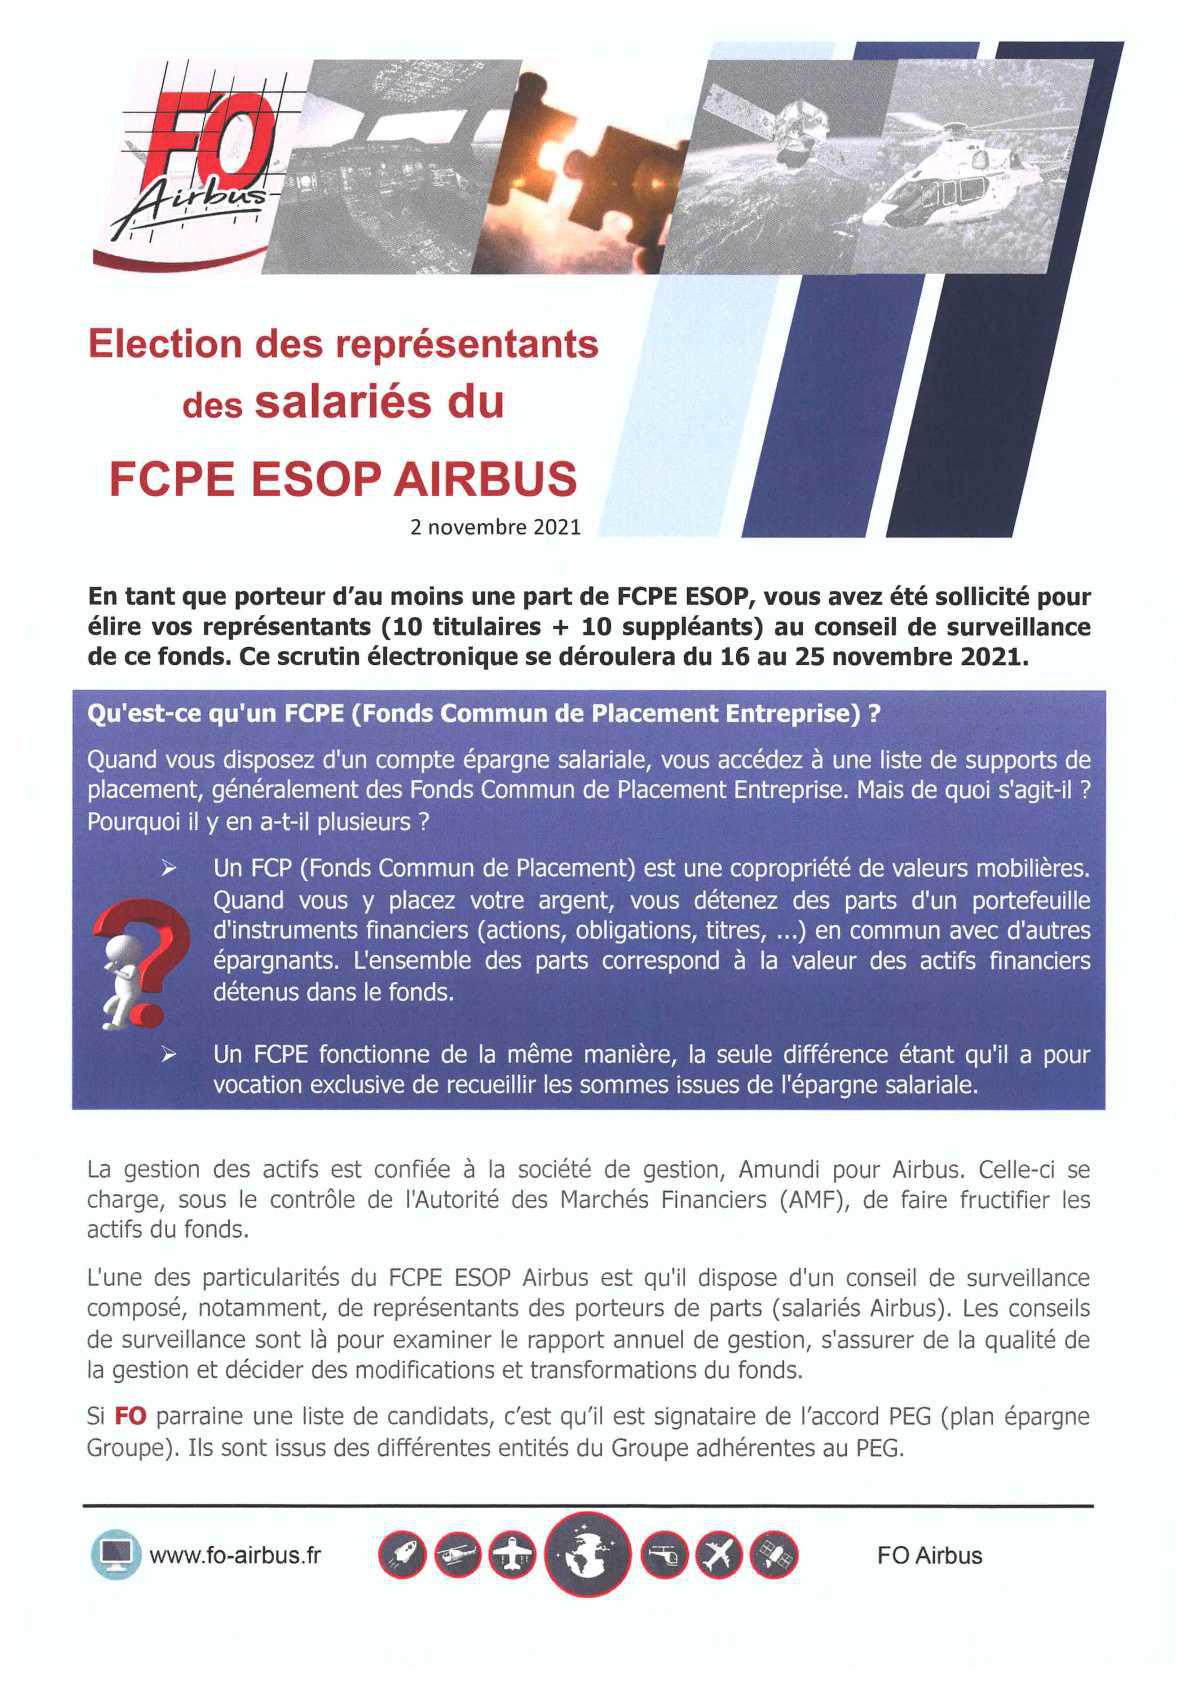 FCPE ESOP AIRBUS: Election des représentants des Salariés